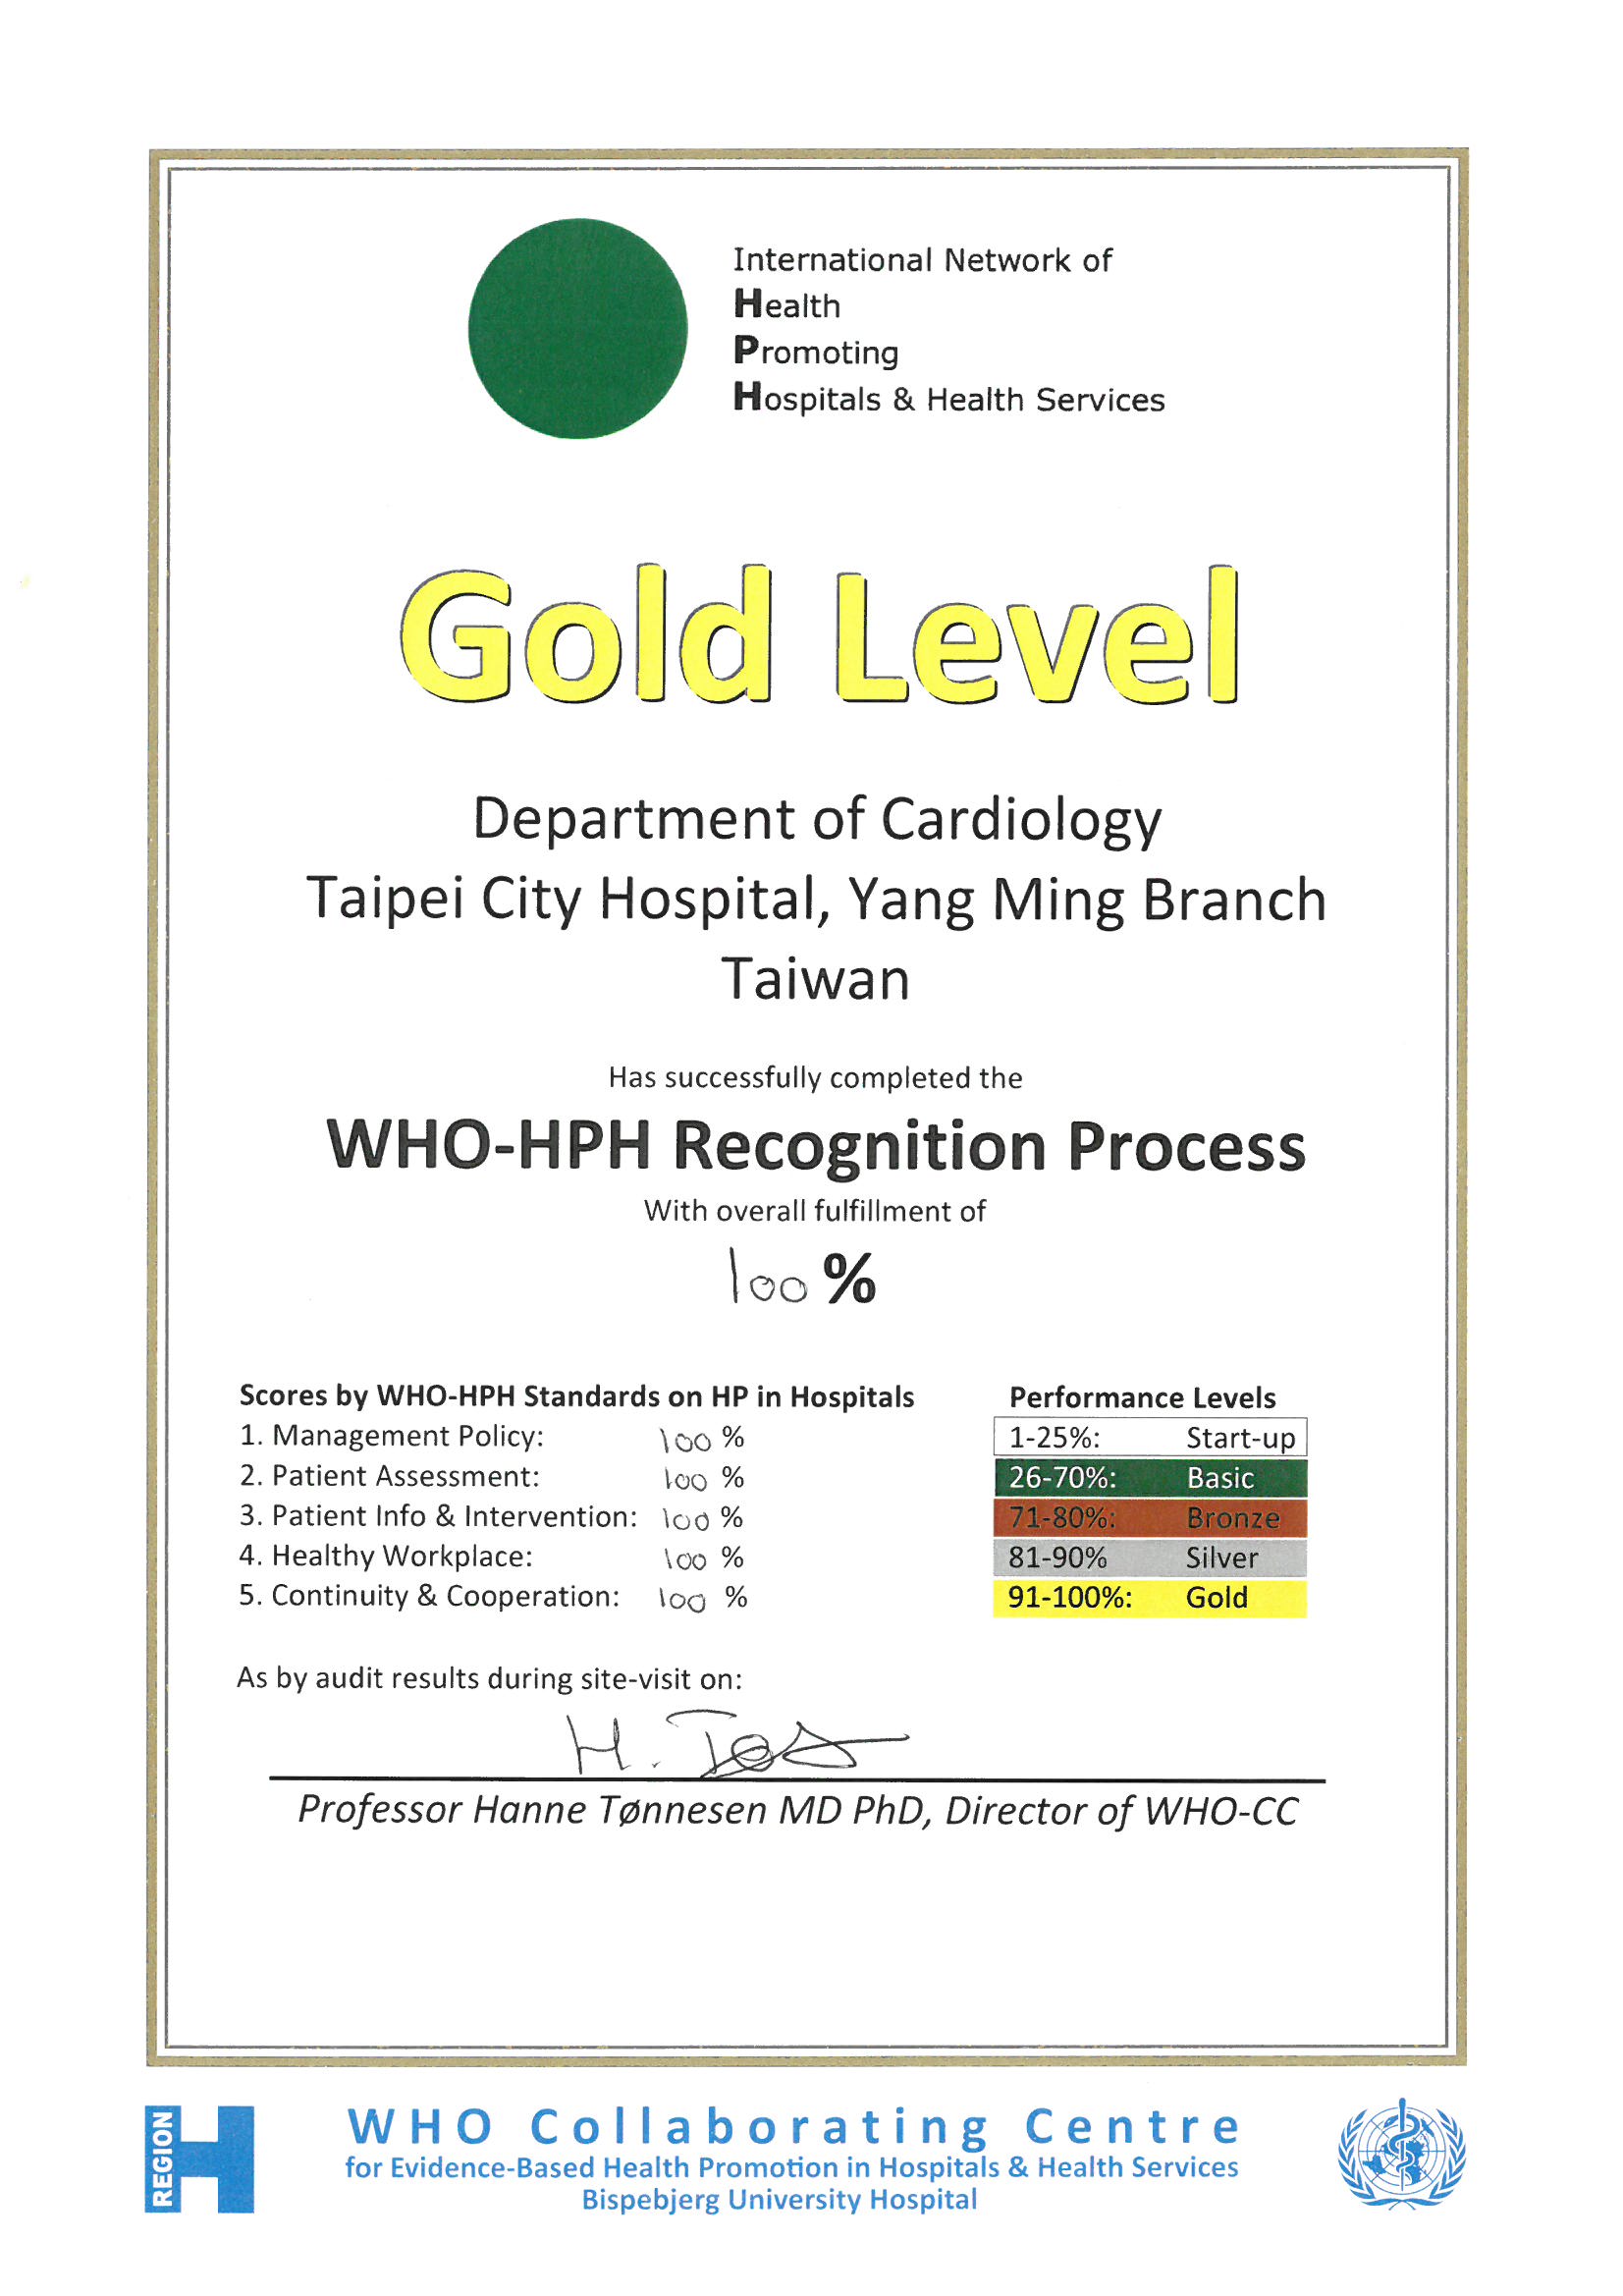 狂賀本院區榮獲世界衛生組織（WHO）健康促進醫院進階認證試驗計畫，獲頒最高榮譽「金獎」